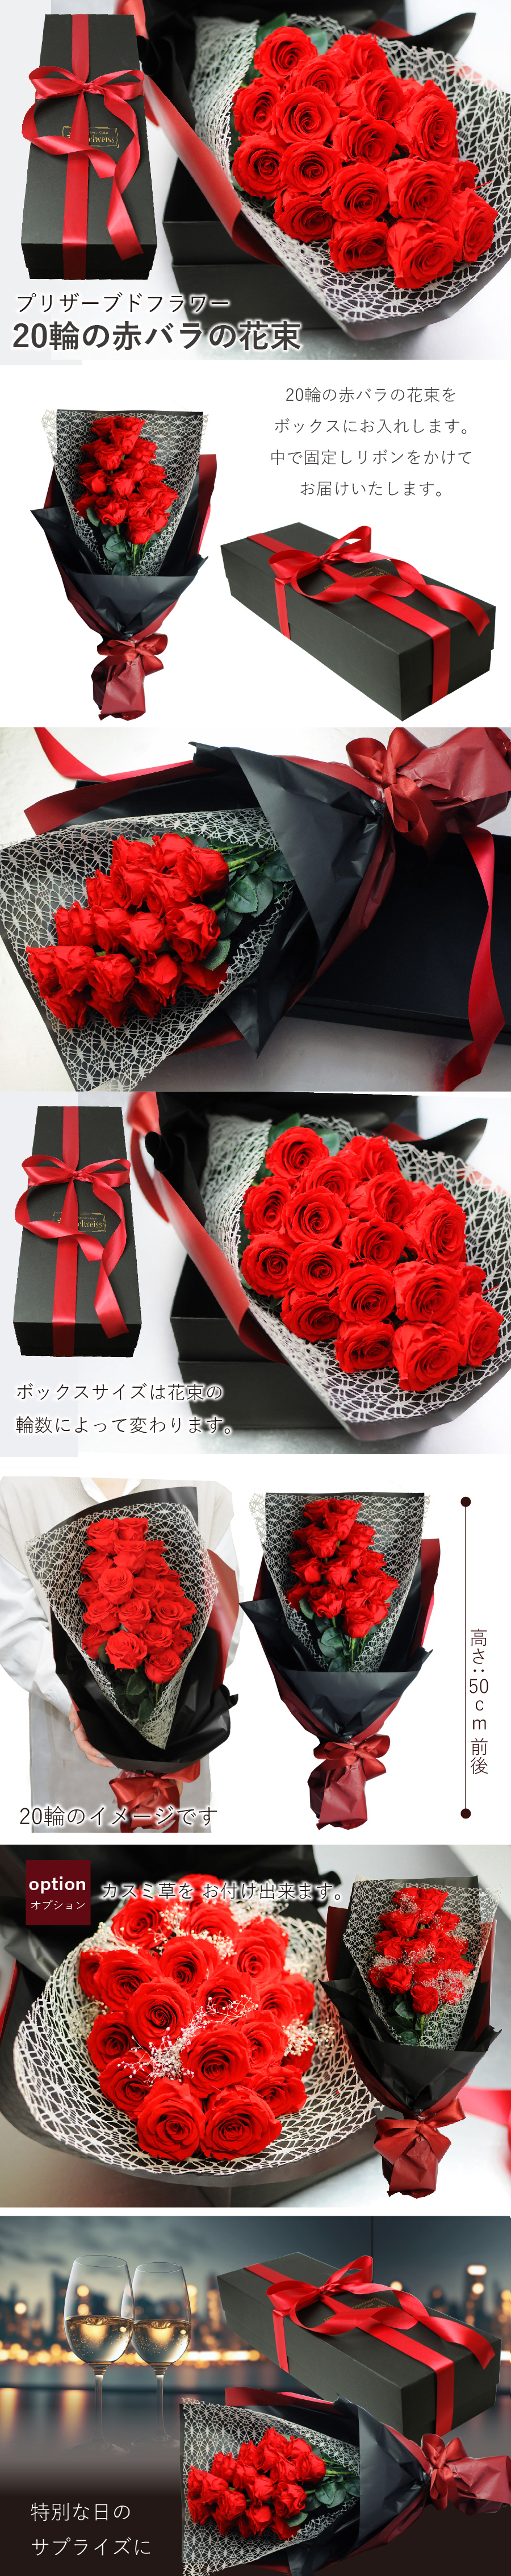 ブリザードフラワー 20輪の赤バラの花束 ボックス